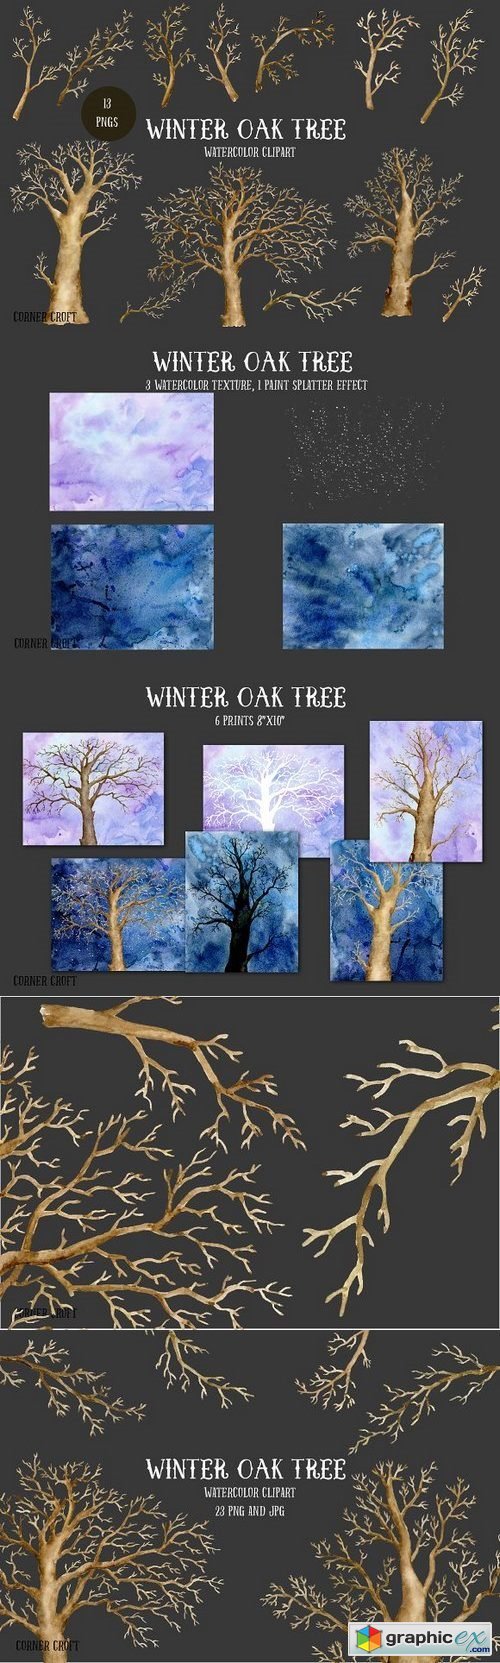 Watercolor Clipart Winter Oak Tree